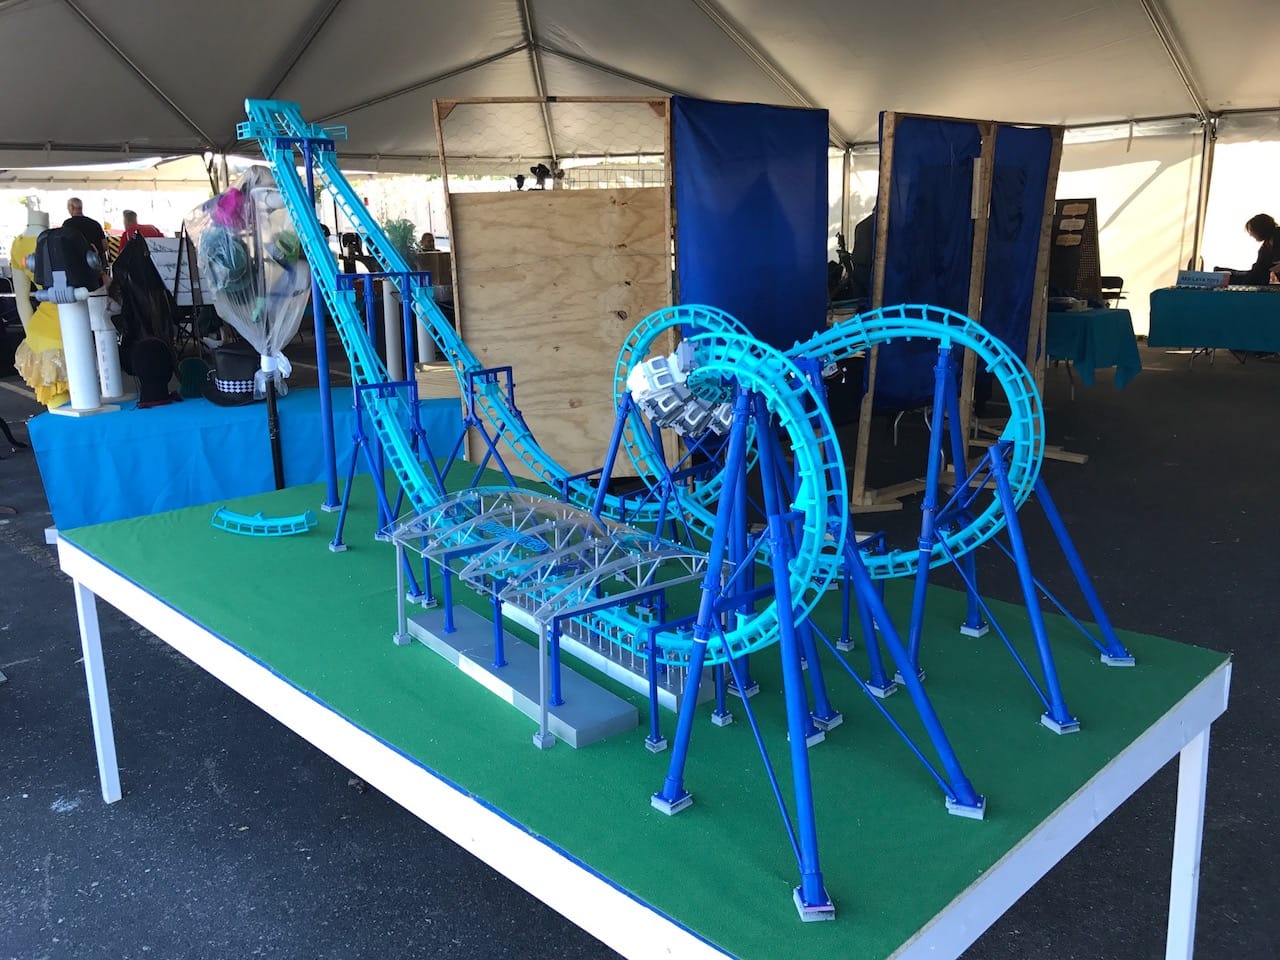  The 3D printed Invertigo Roller Coaster on display 